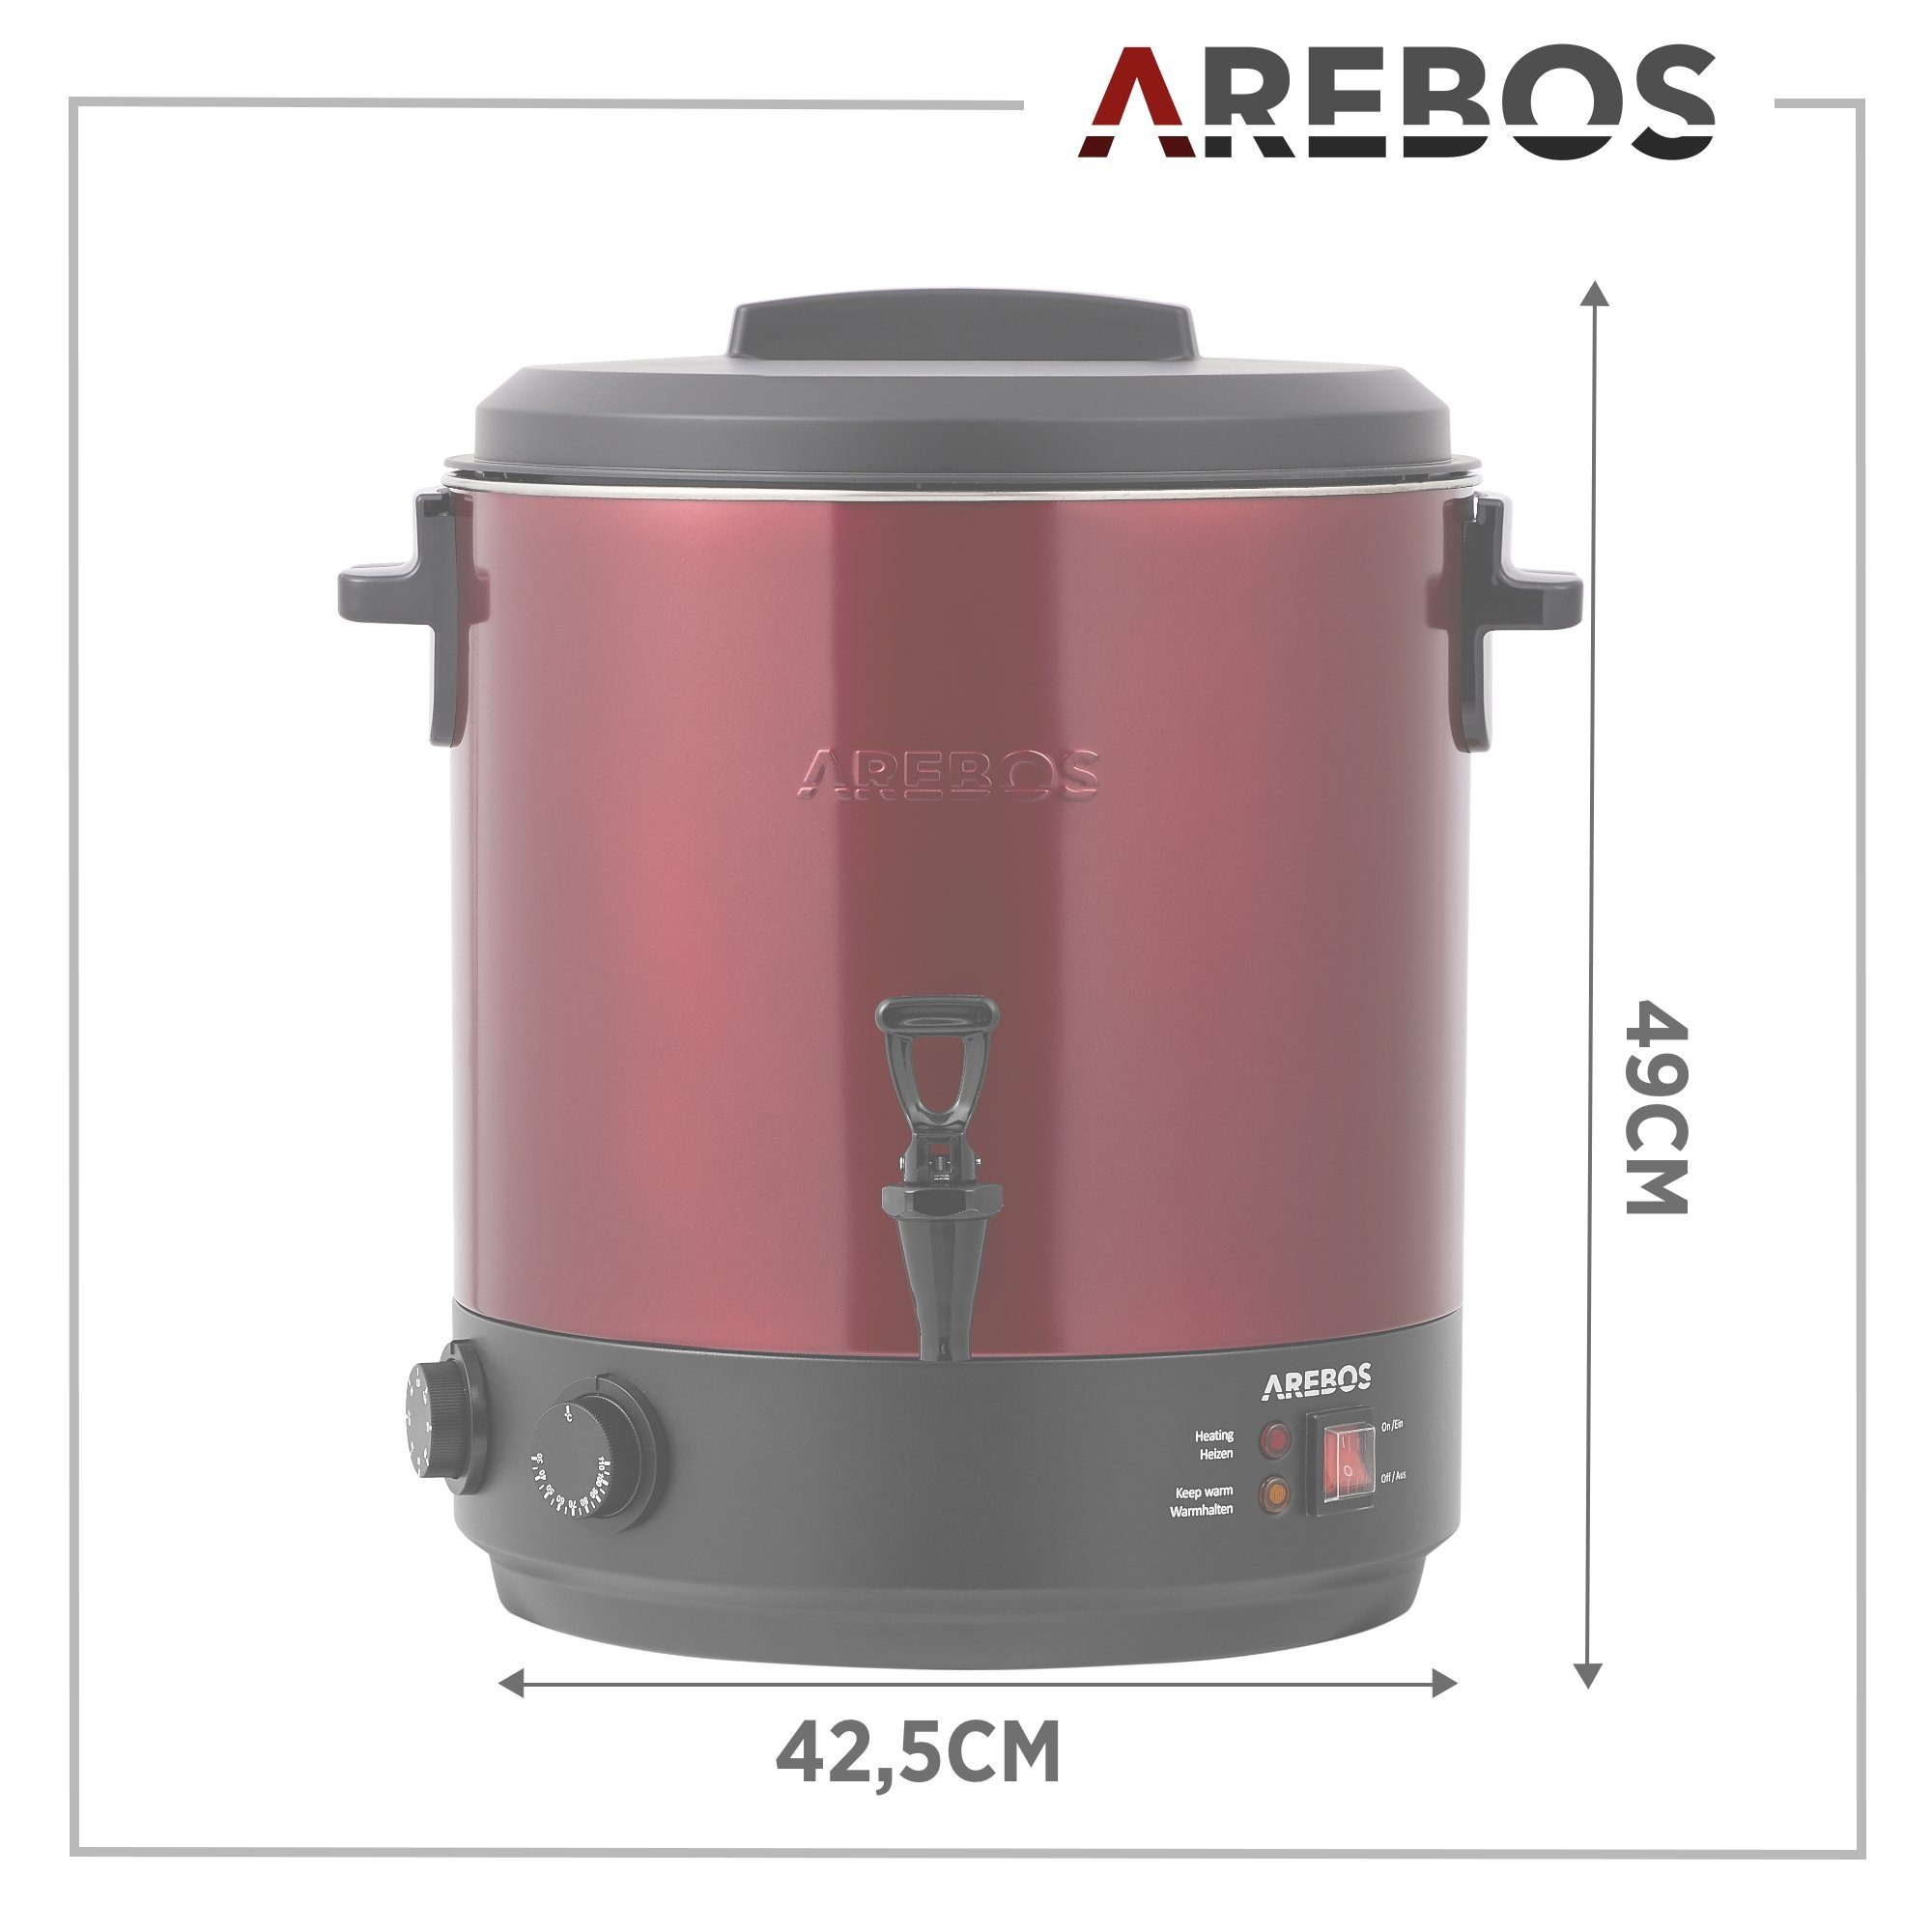 Arebos Einkoch- und Glühweinautomat 1800 W, Einkochtopf 28 L, mit Timer,Thermostat & Überhitzungsschutz, 1800 W, Timerfunktion 20-120 min.